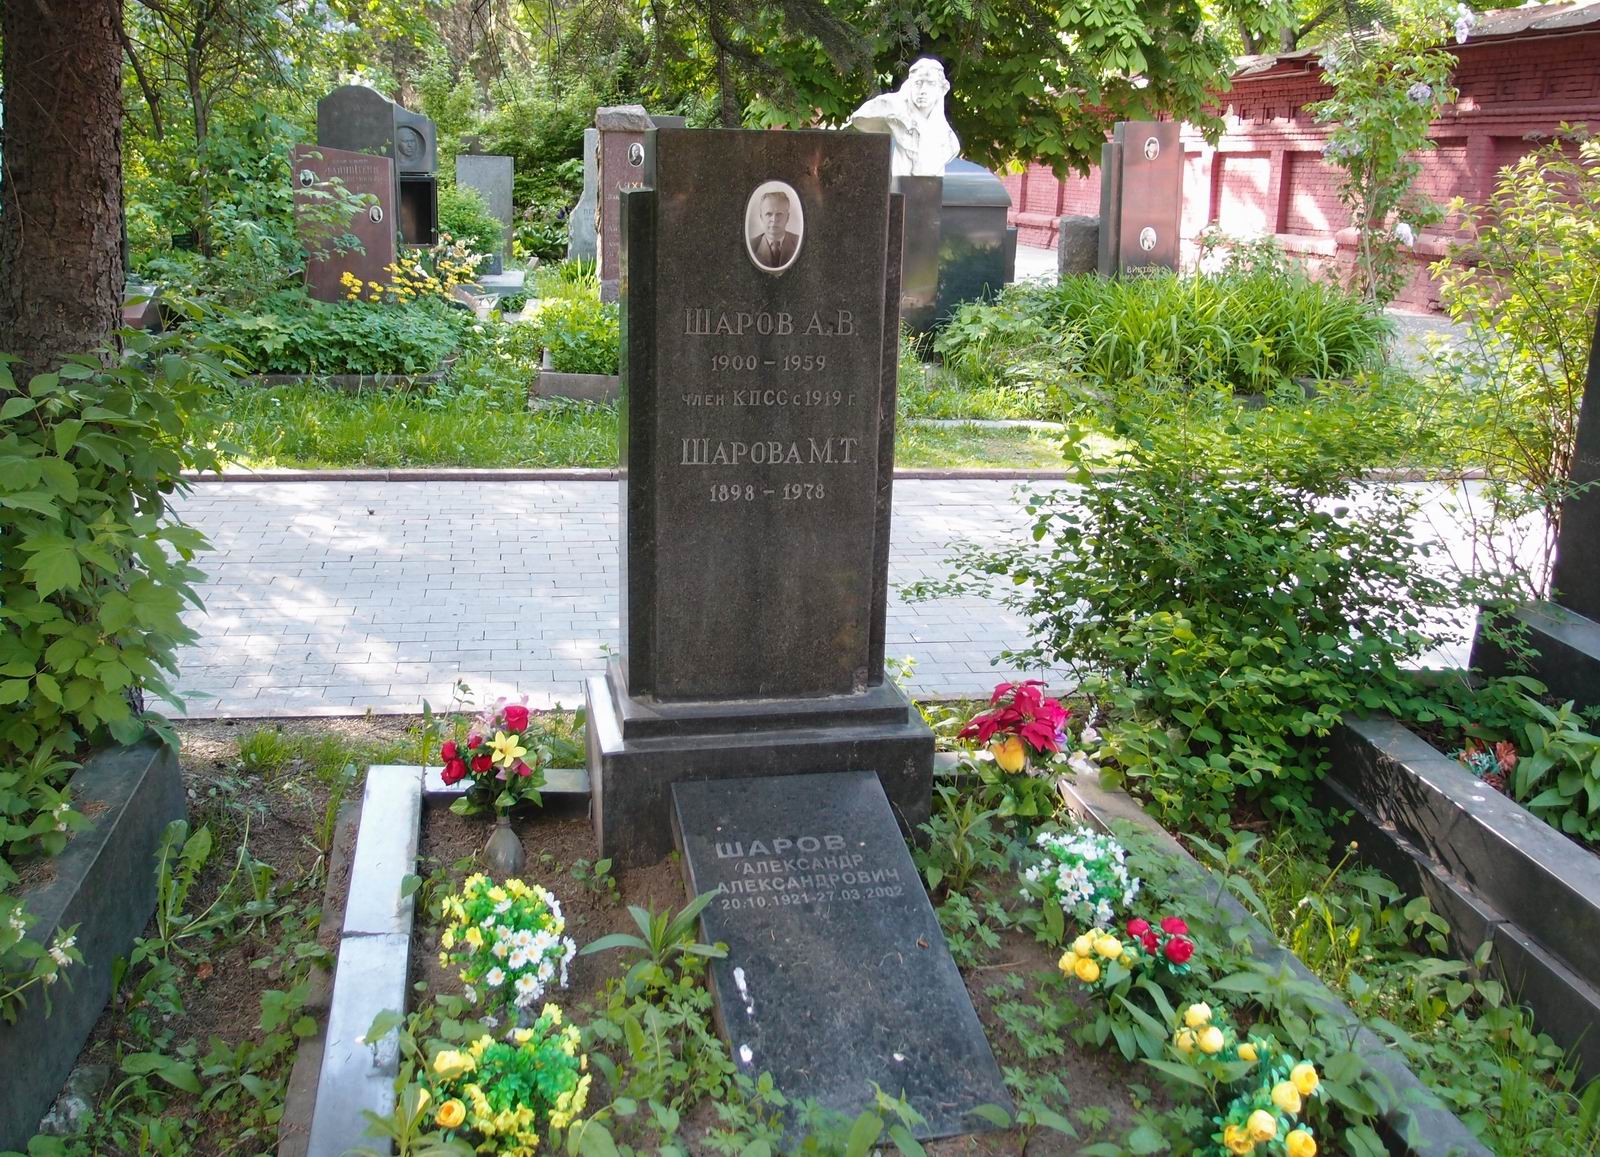 Памятник на могиле Шарова А.В. (1900-1959), на Новодевичьем кладбище (5-30-2).